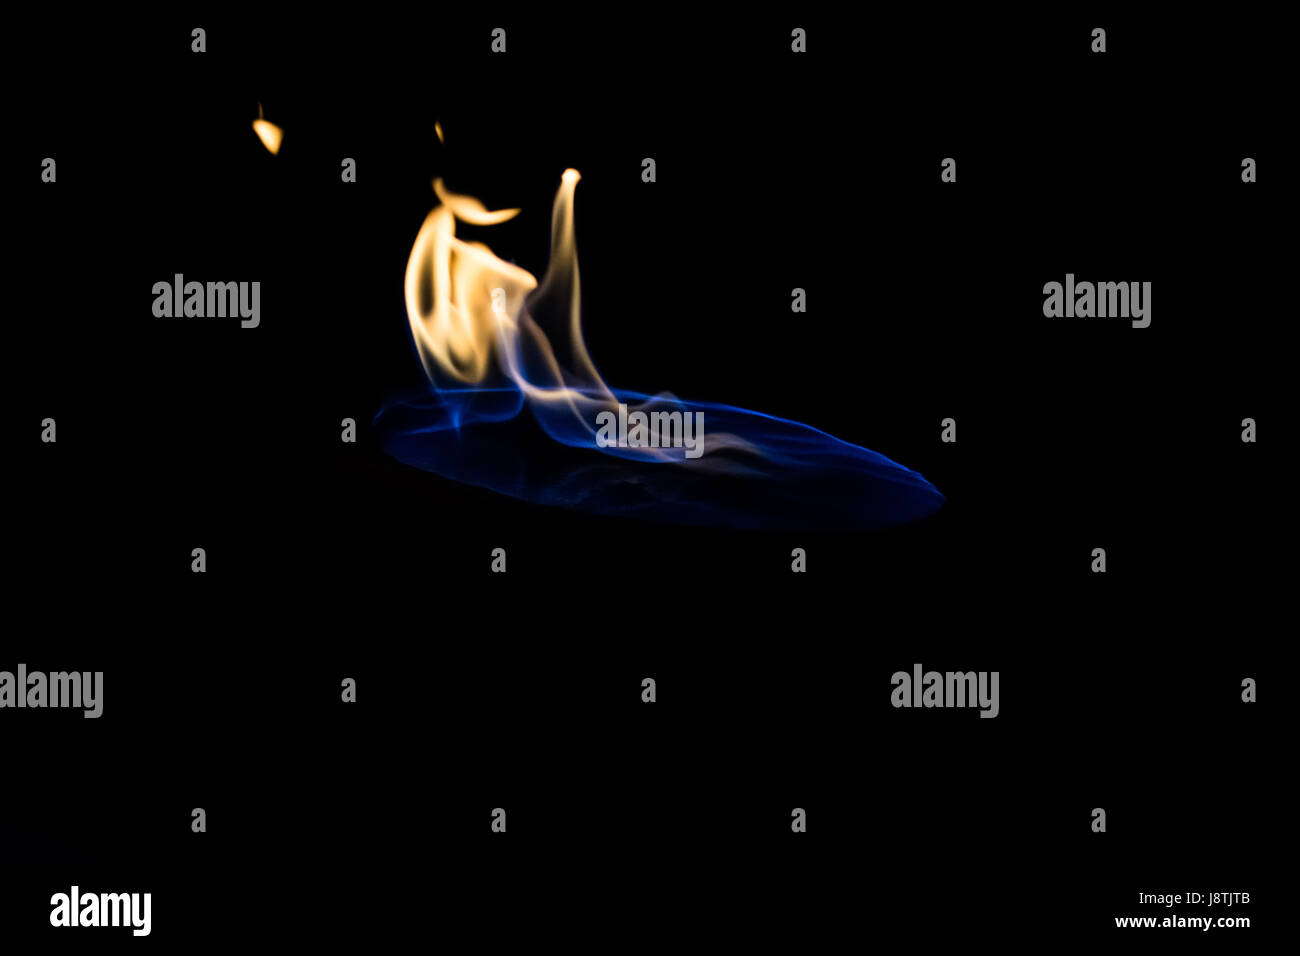 Il fuoco con fiamma blu base e fiamme arancione verso la parte superiore di forma circolare con base sagomata Foto Stock